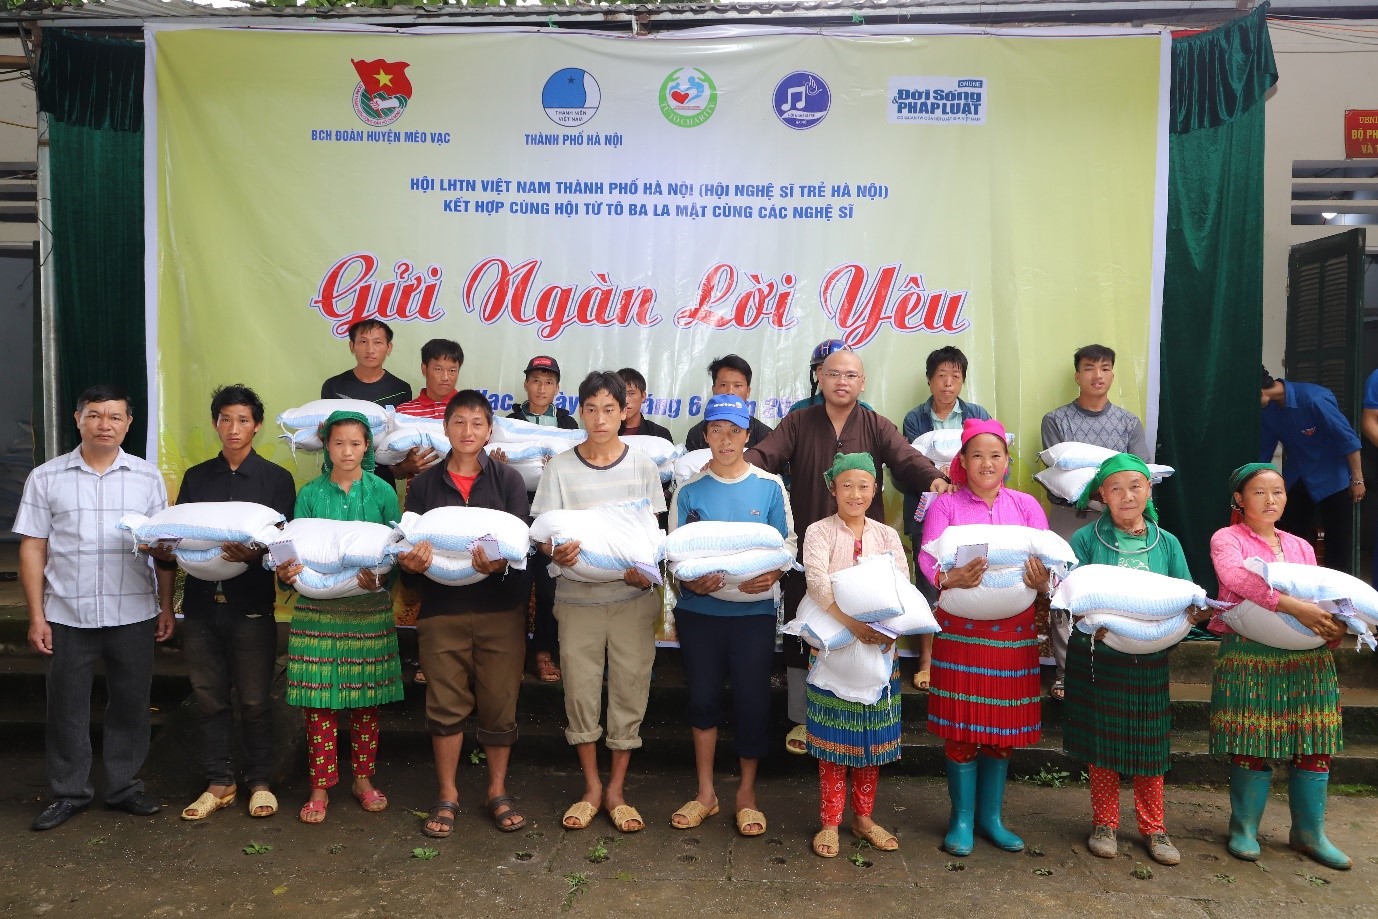 Hội nghệ sỹ trẻ Hà Nội trao quà cho hộ nghèo vùng cao